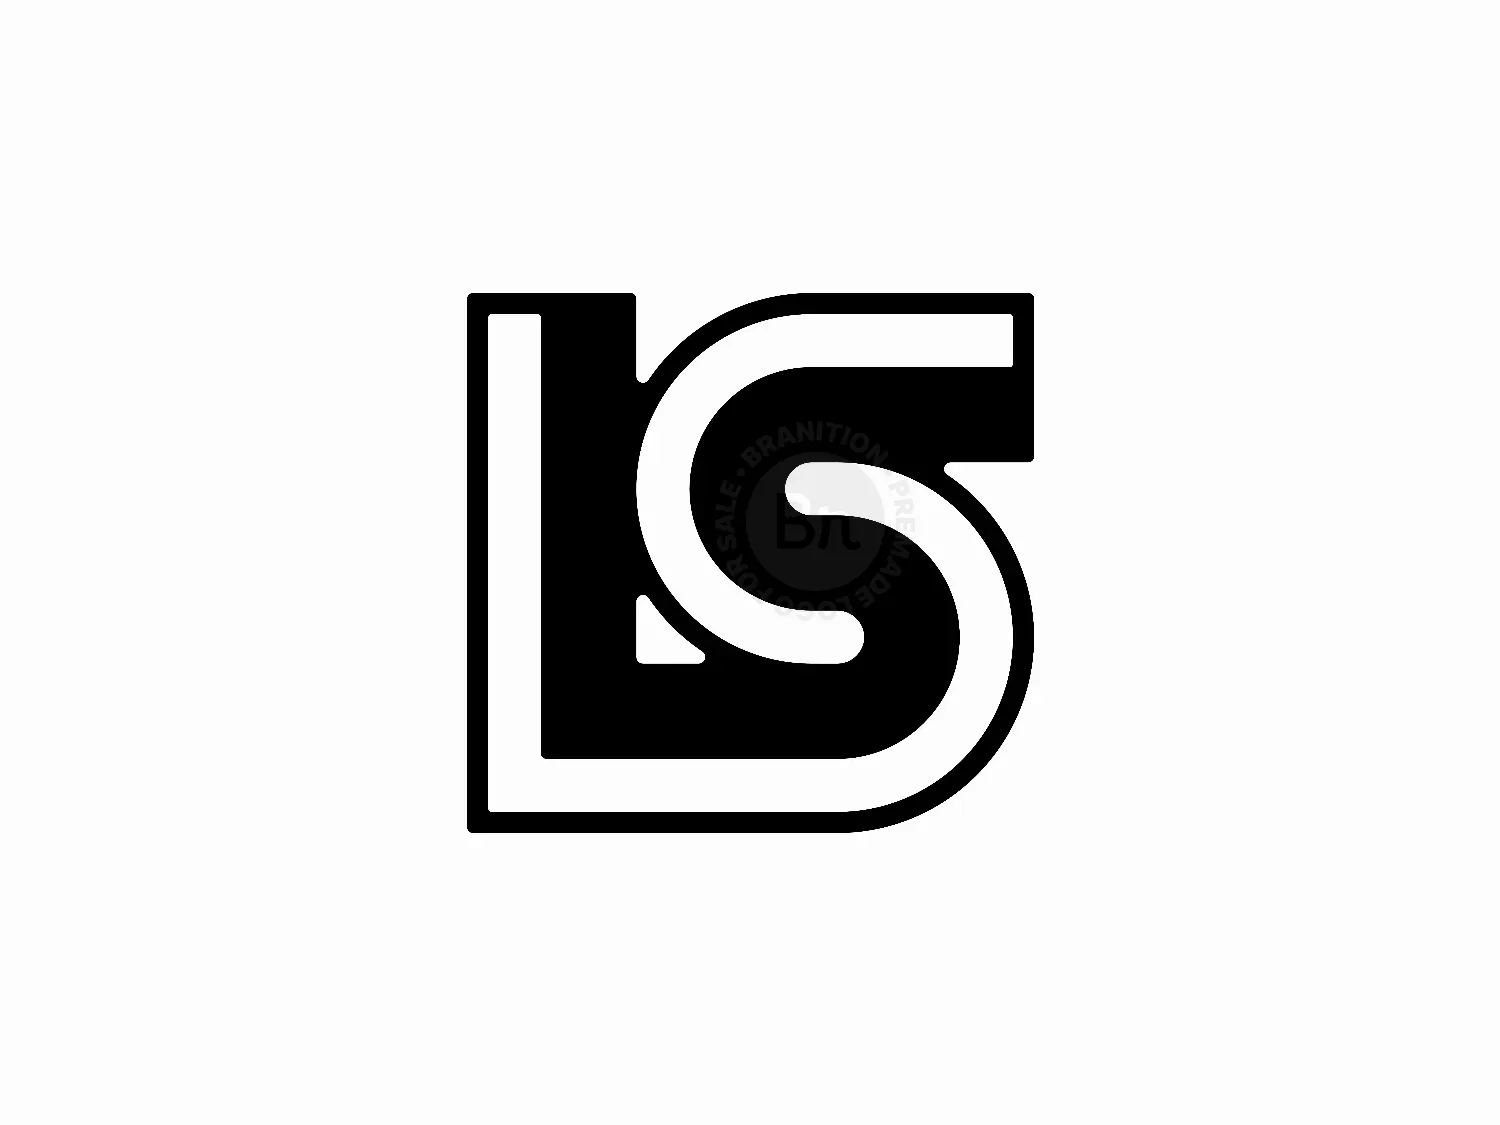 Premium Vector | Ls logo design